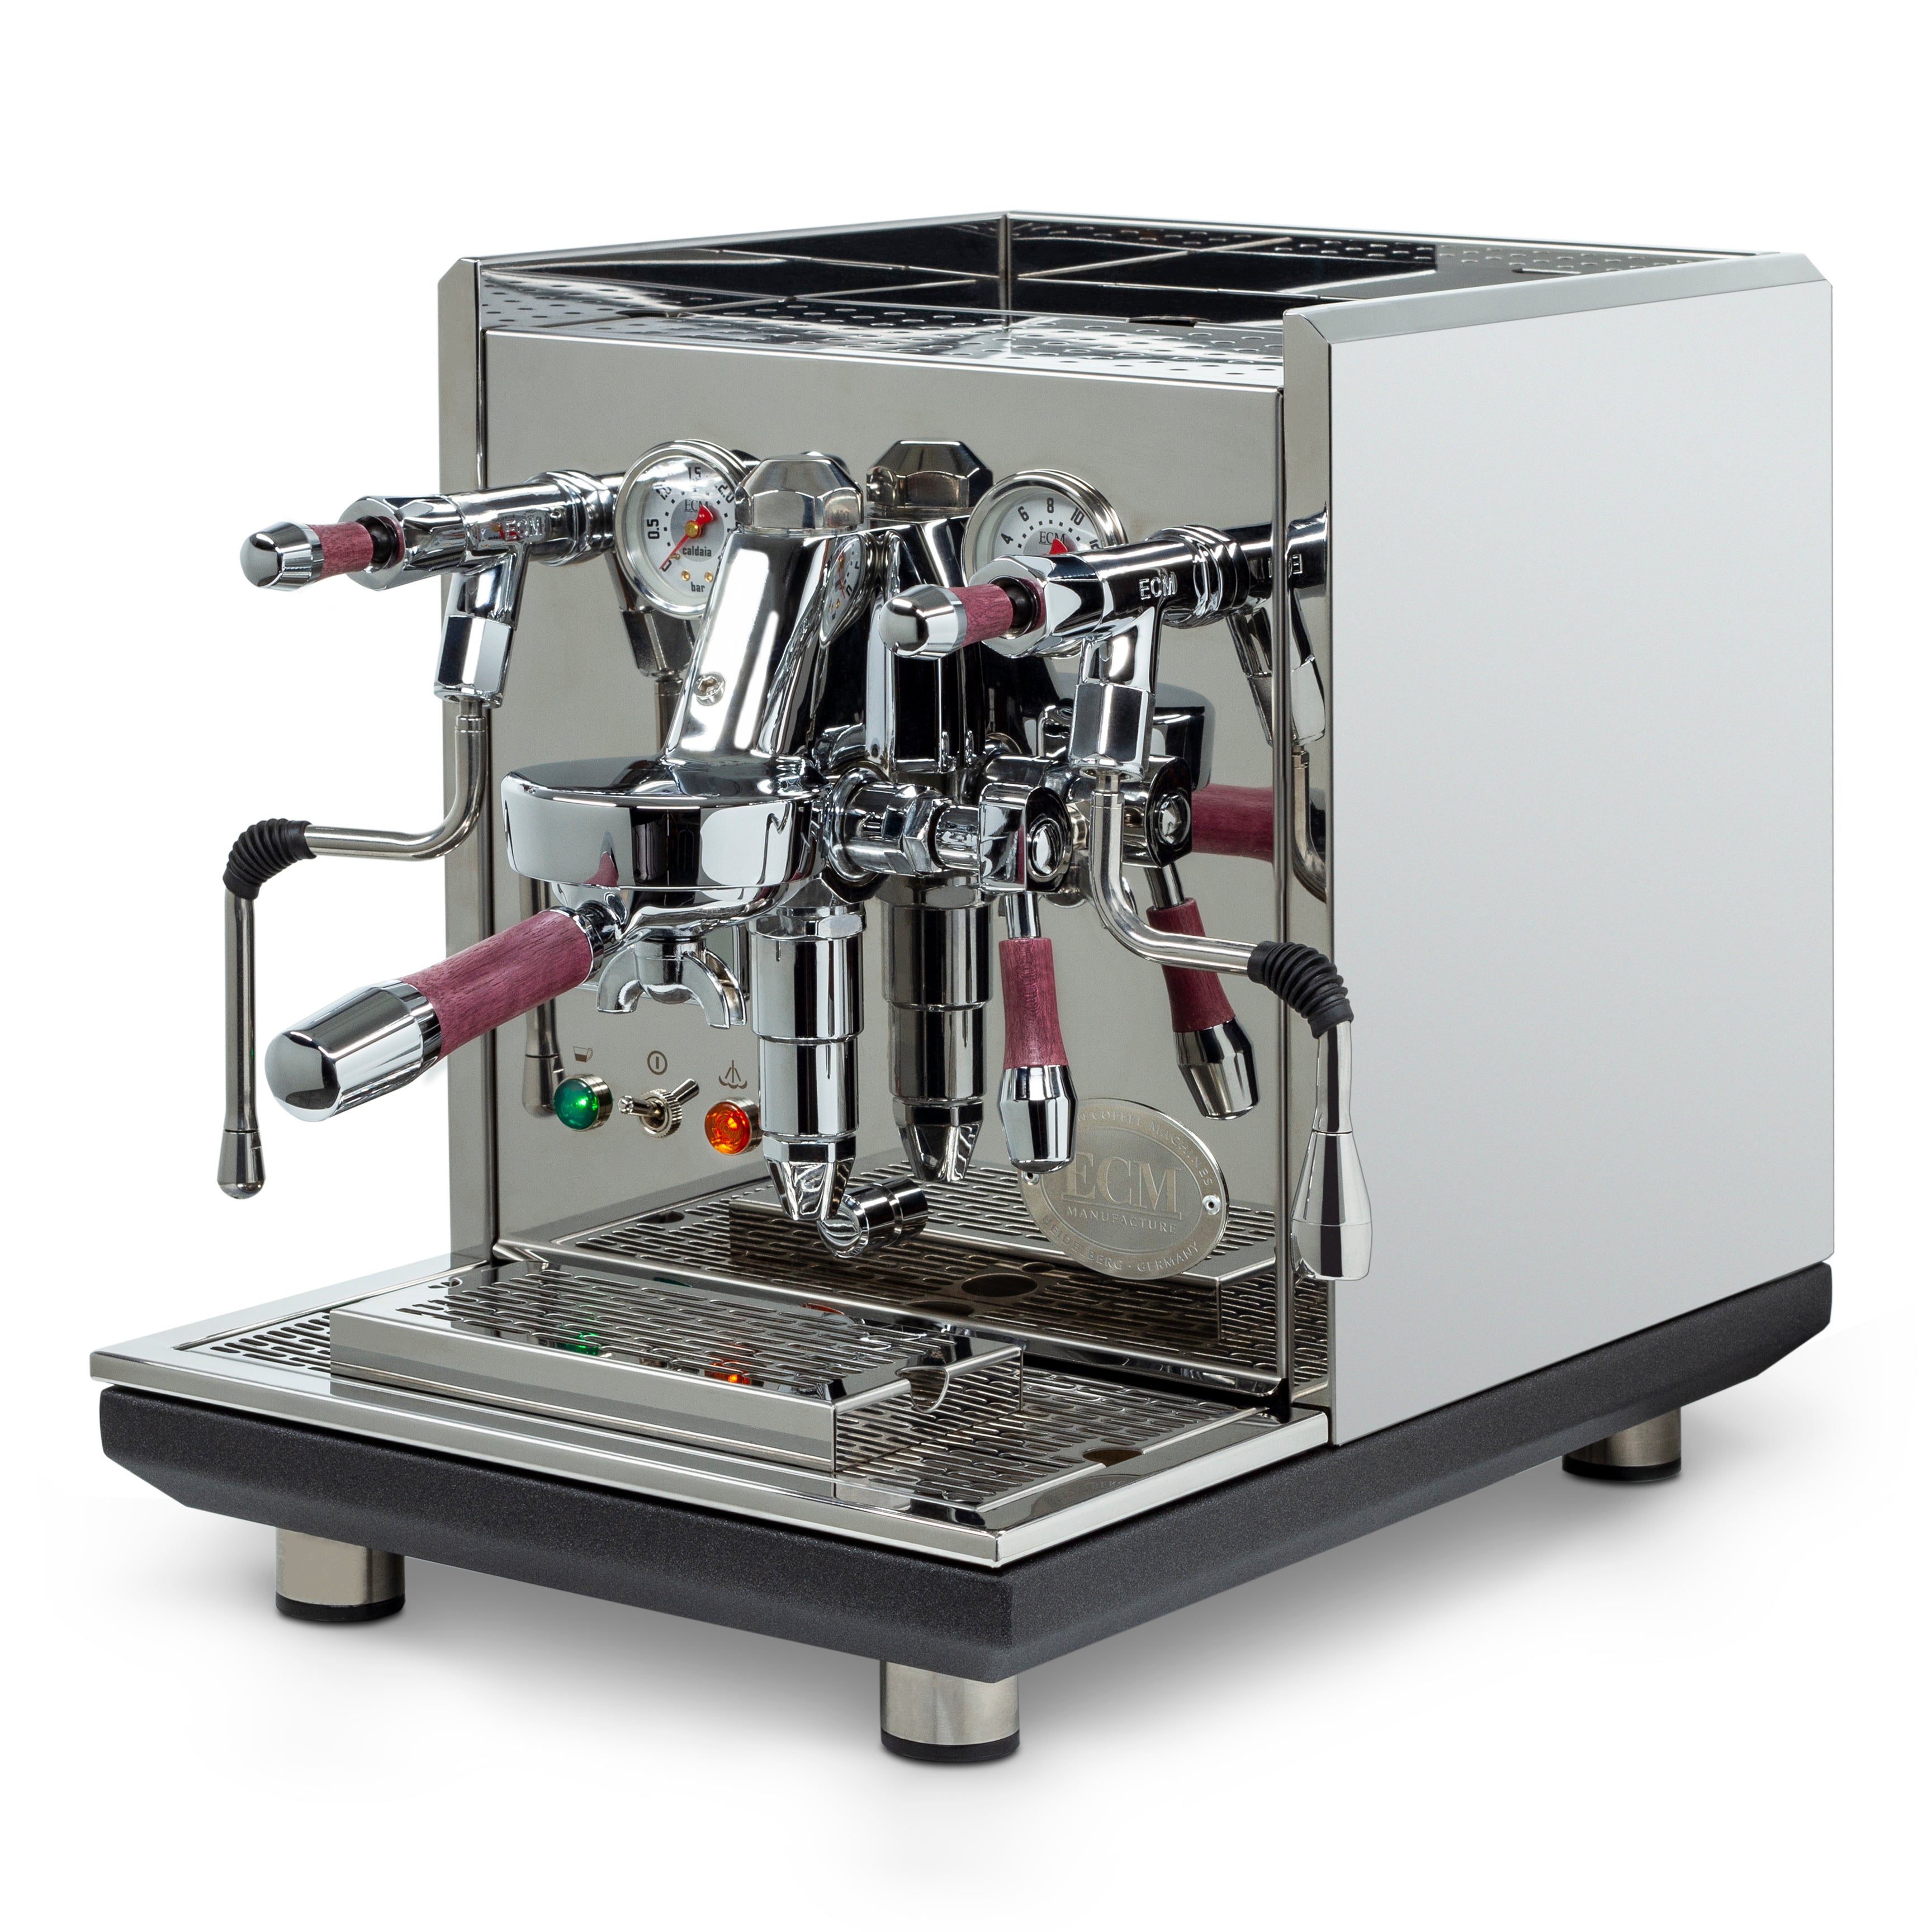 ECM Synchronika Espresso Machine with Purple Heart Accents - Default Title